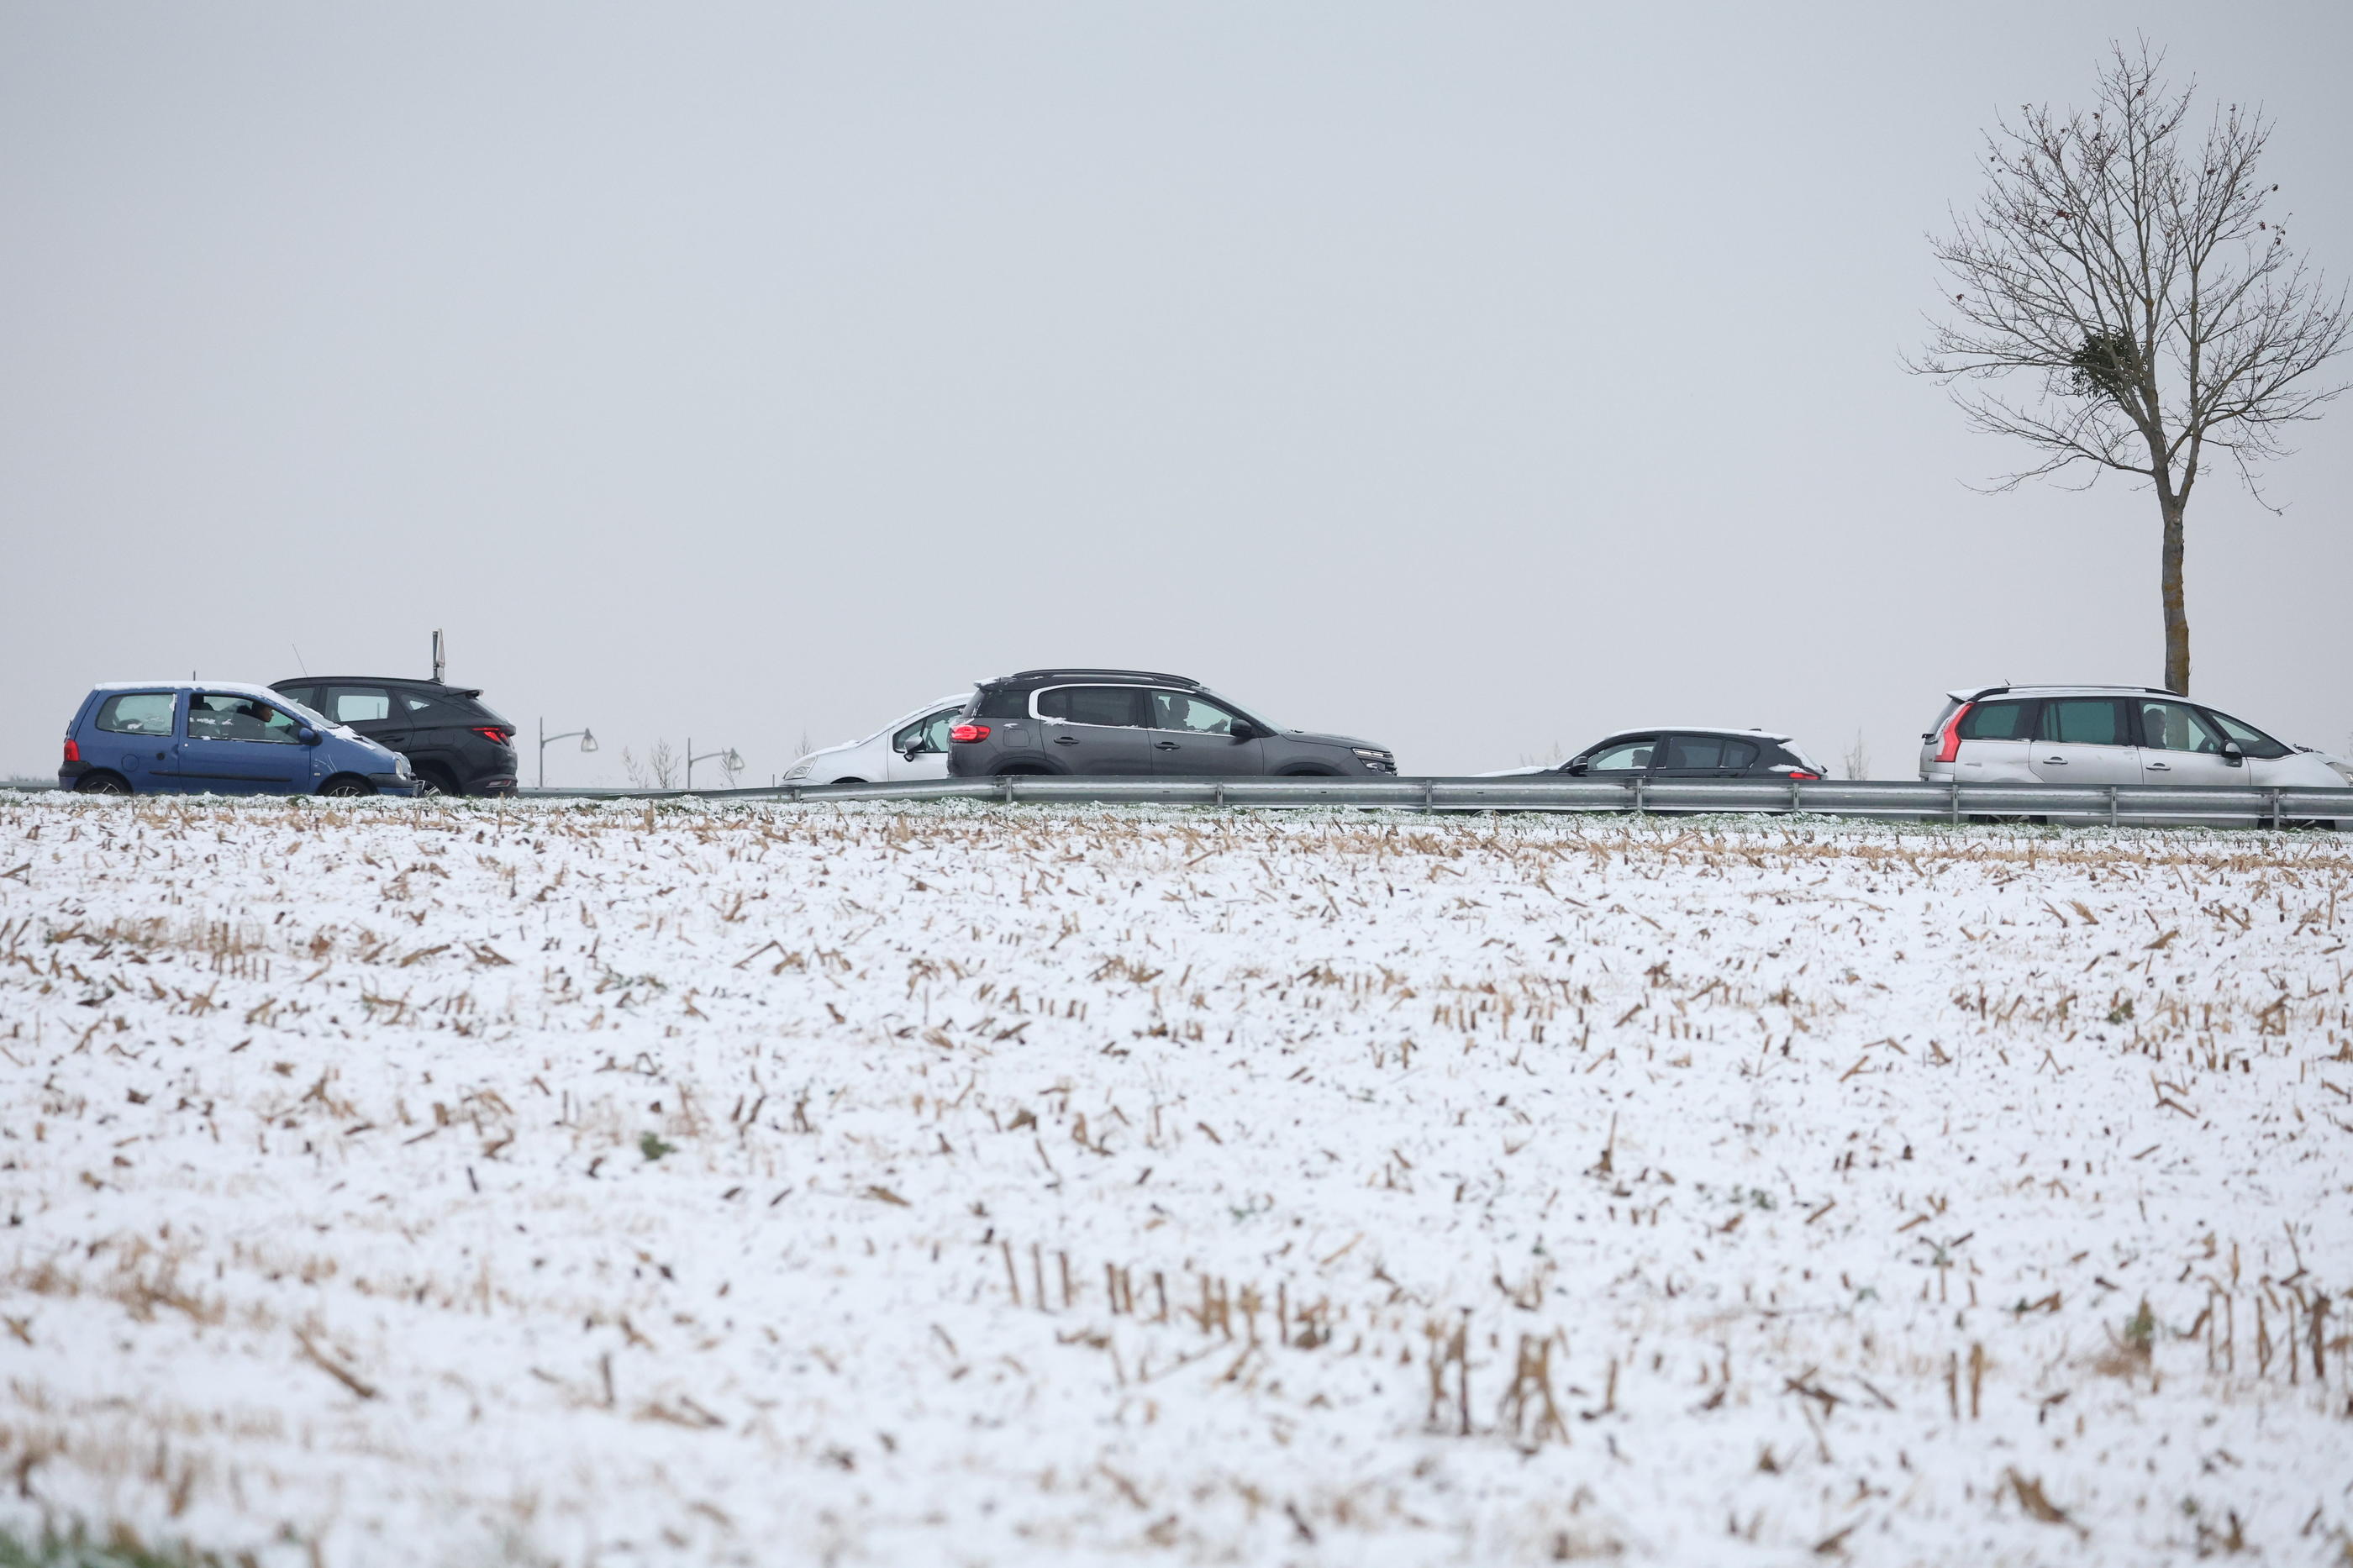 Les Yvelines et l’Essonne sont toujours en vigilance orange neige et verglas ce mercredi. Les services de l’Etat dans ces deux départements appellent les usagers de la route « à la plus grande prudence ». La vitesse a été réduite à 70 km/h sur les routes de toute l’Île-de-France. LP/Arnaud Journois